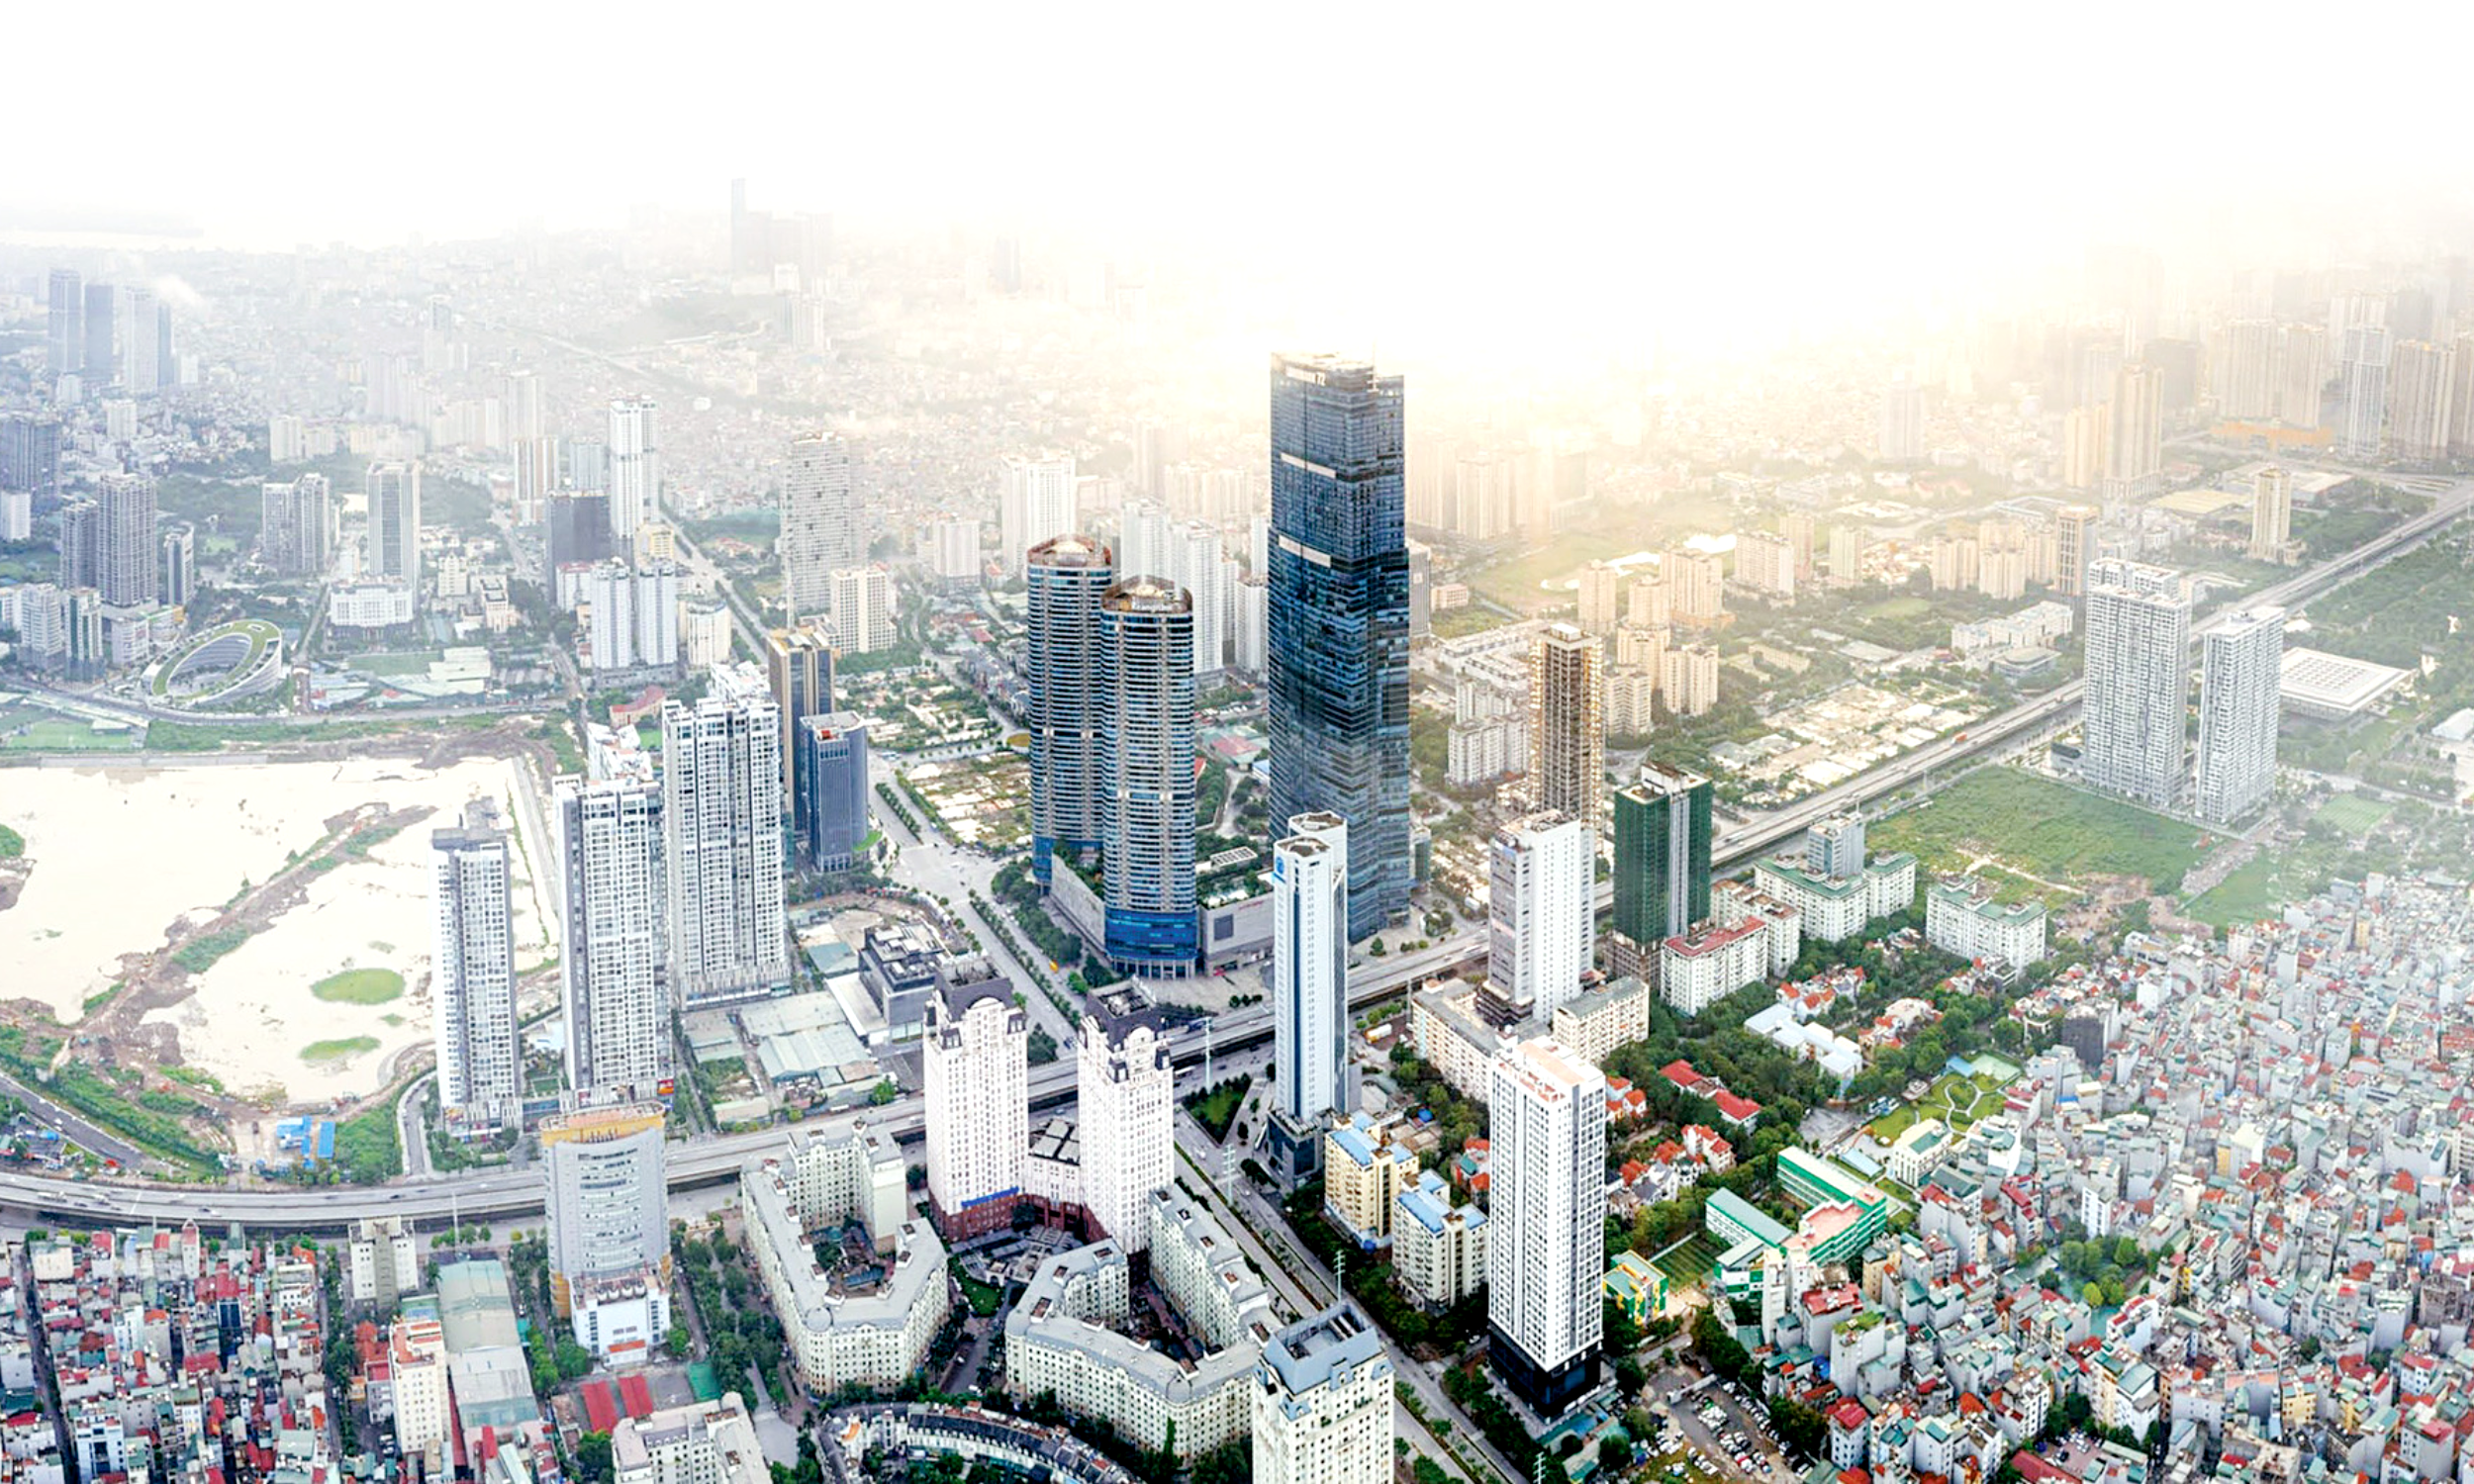 Xây dựng Thủ đô Hà Nội ngày càng giàu đẹp, văn minh, hiện đại